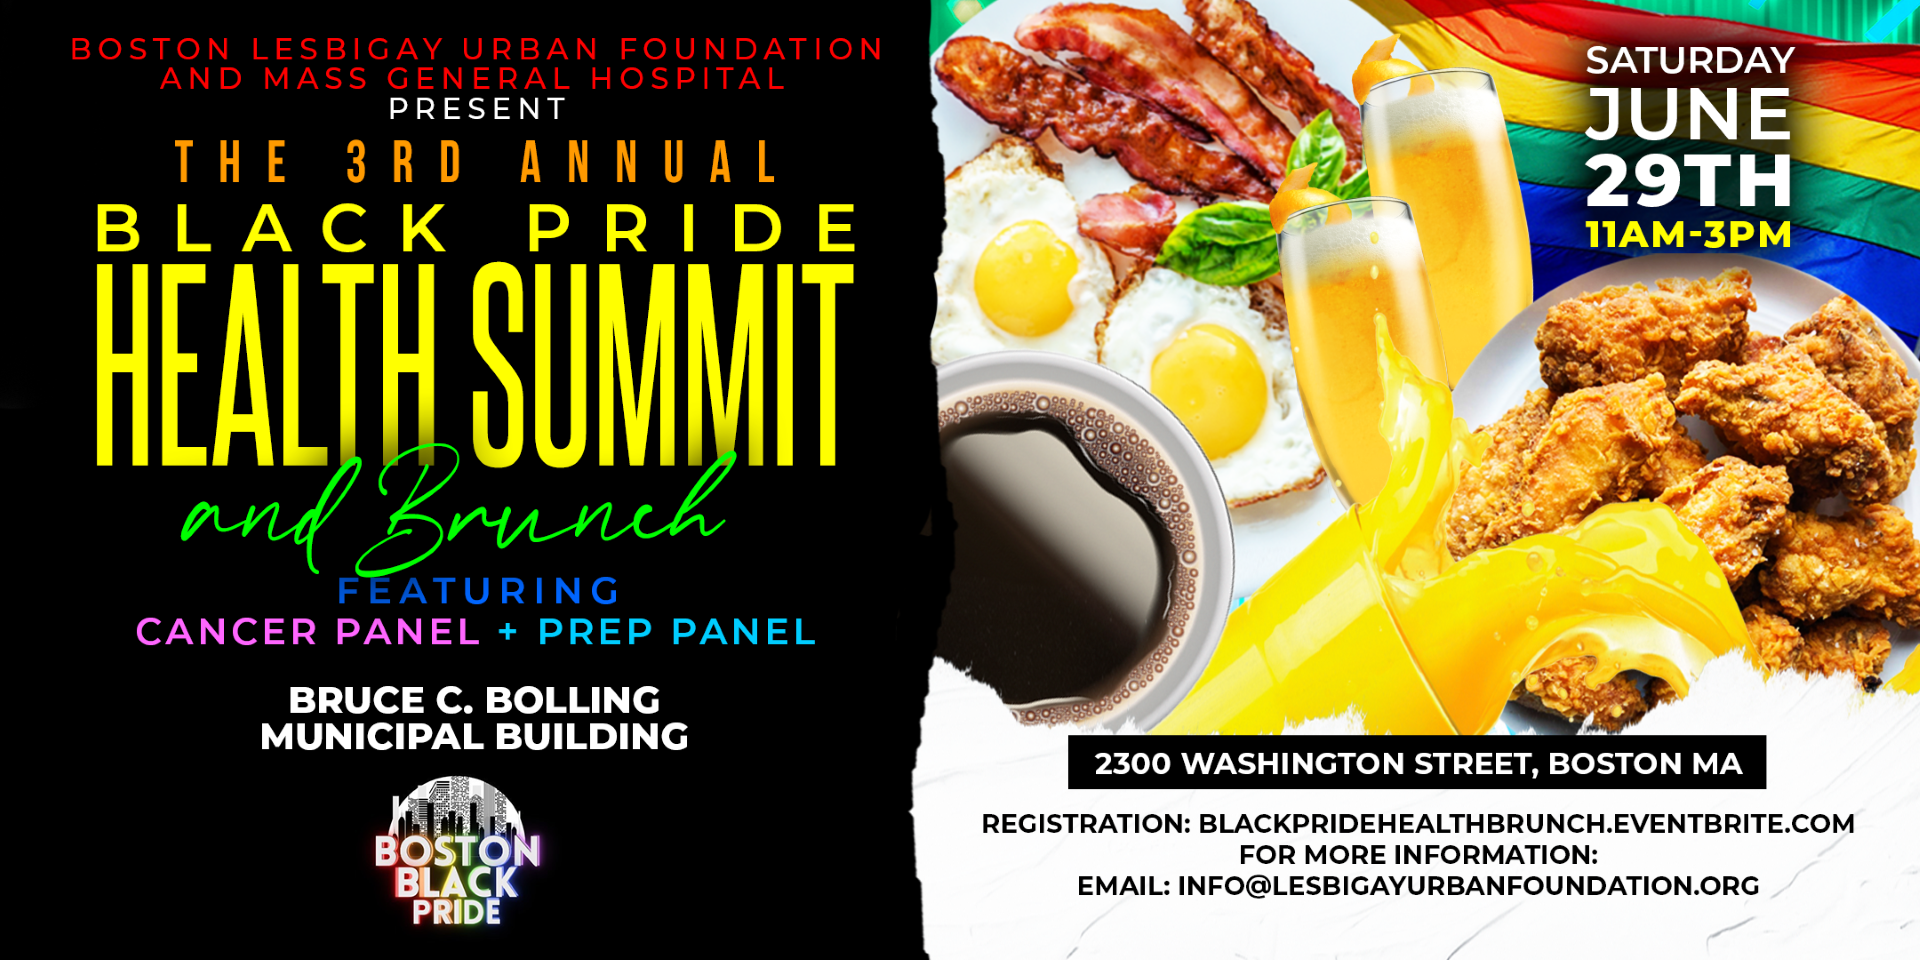 black pride health summit event details